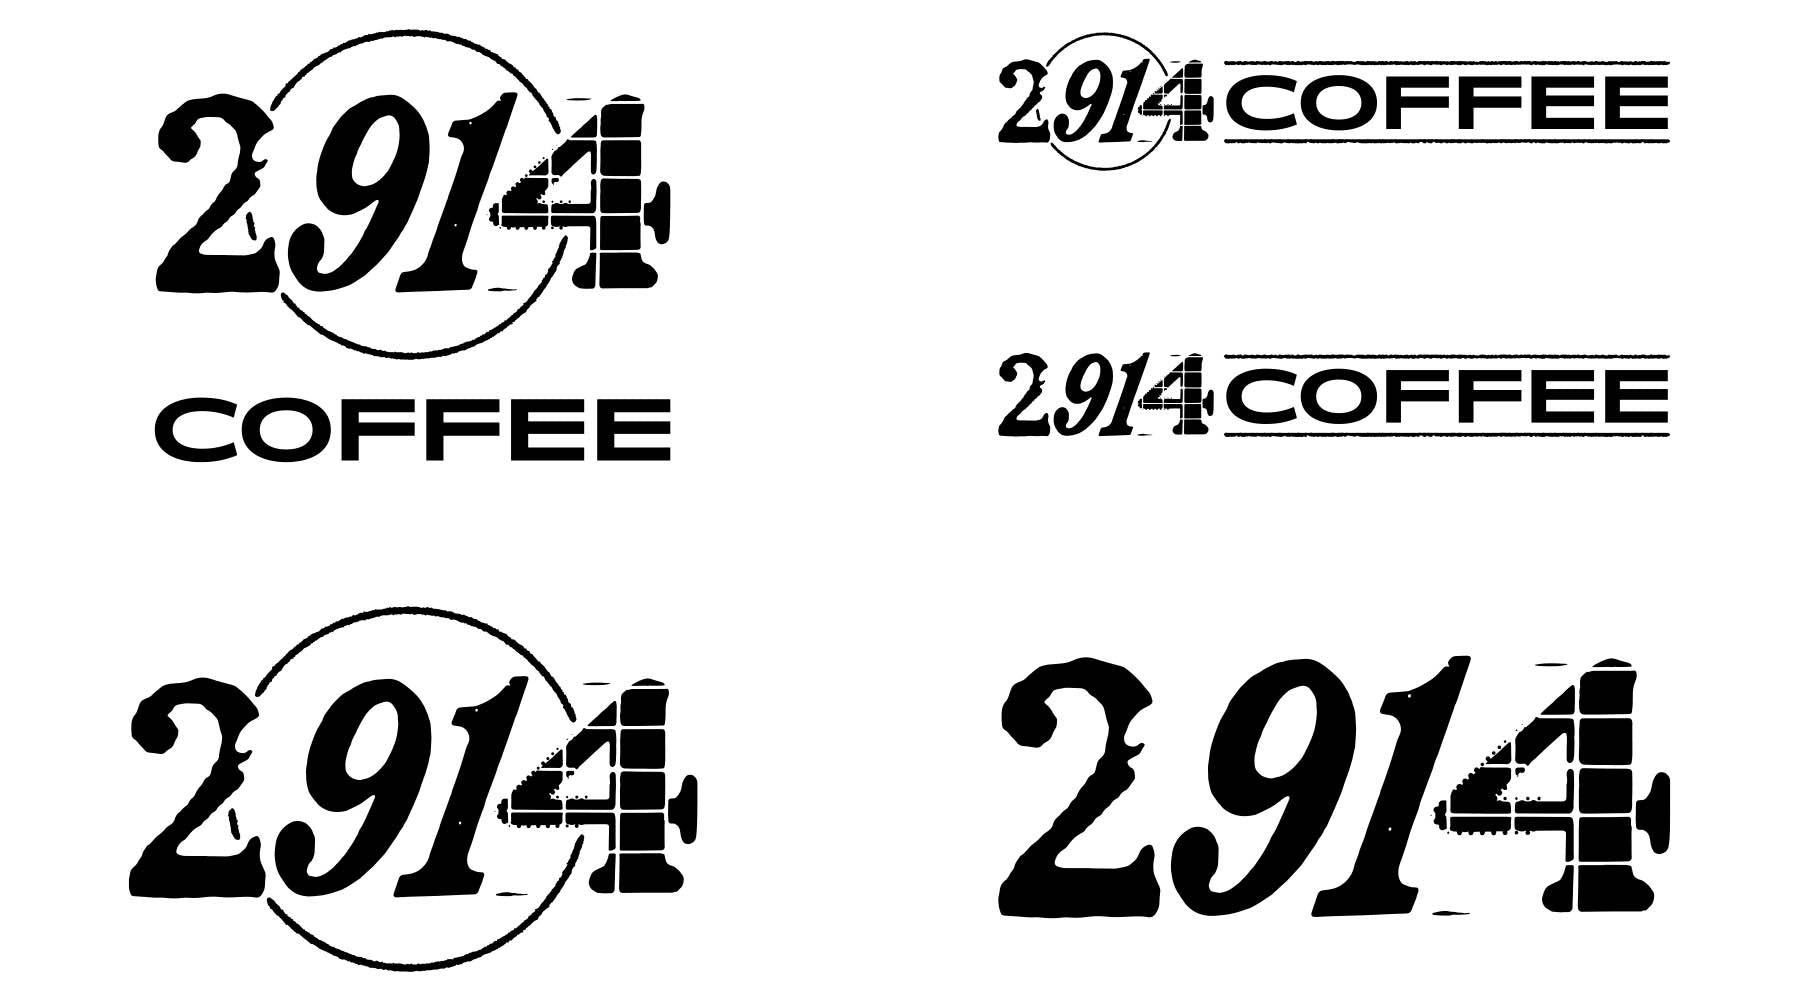 2914 logo design coffee denver